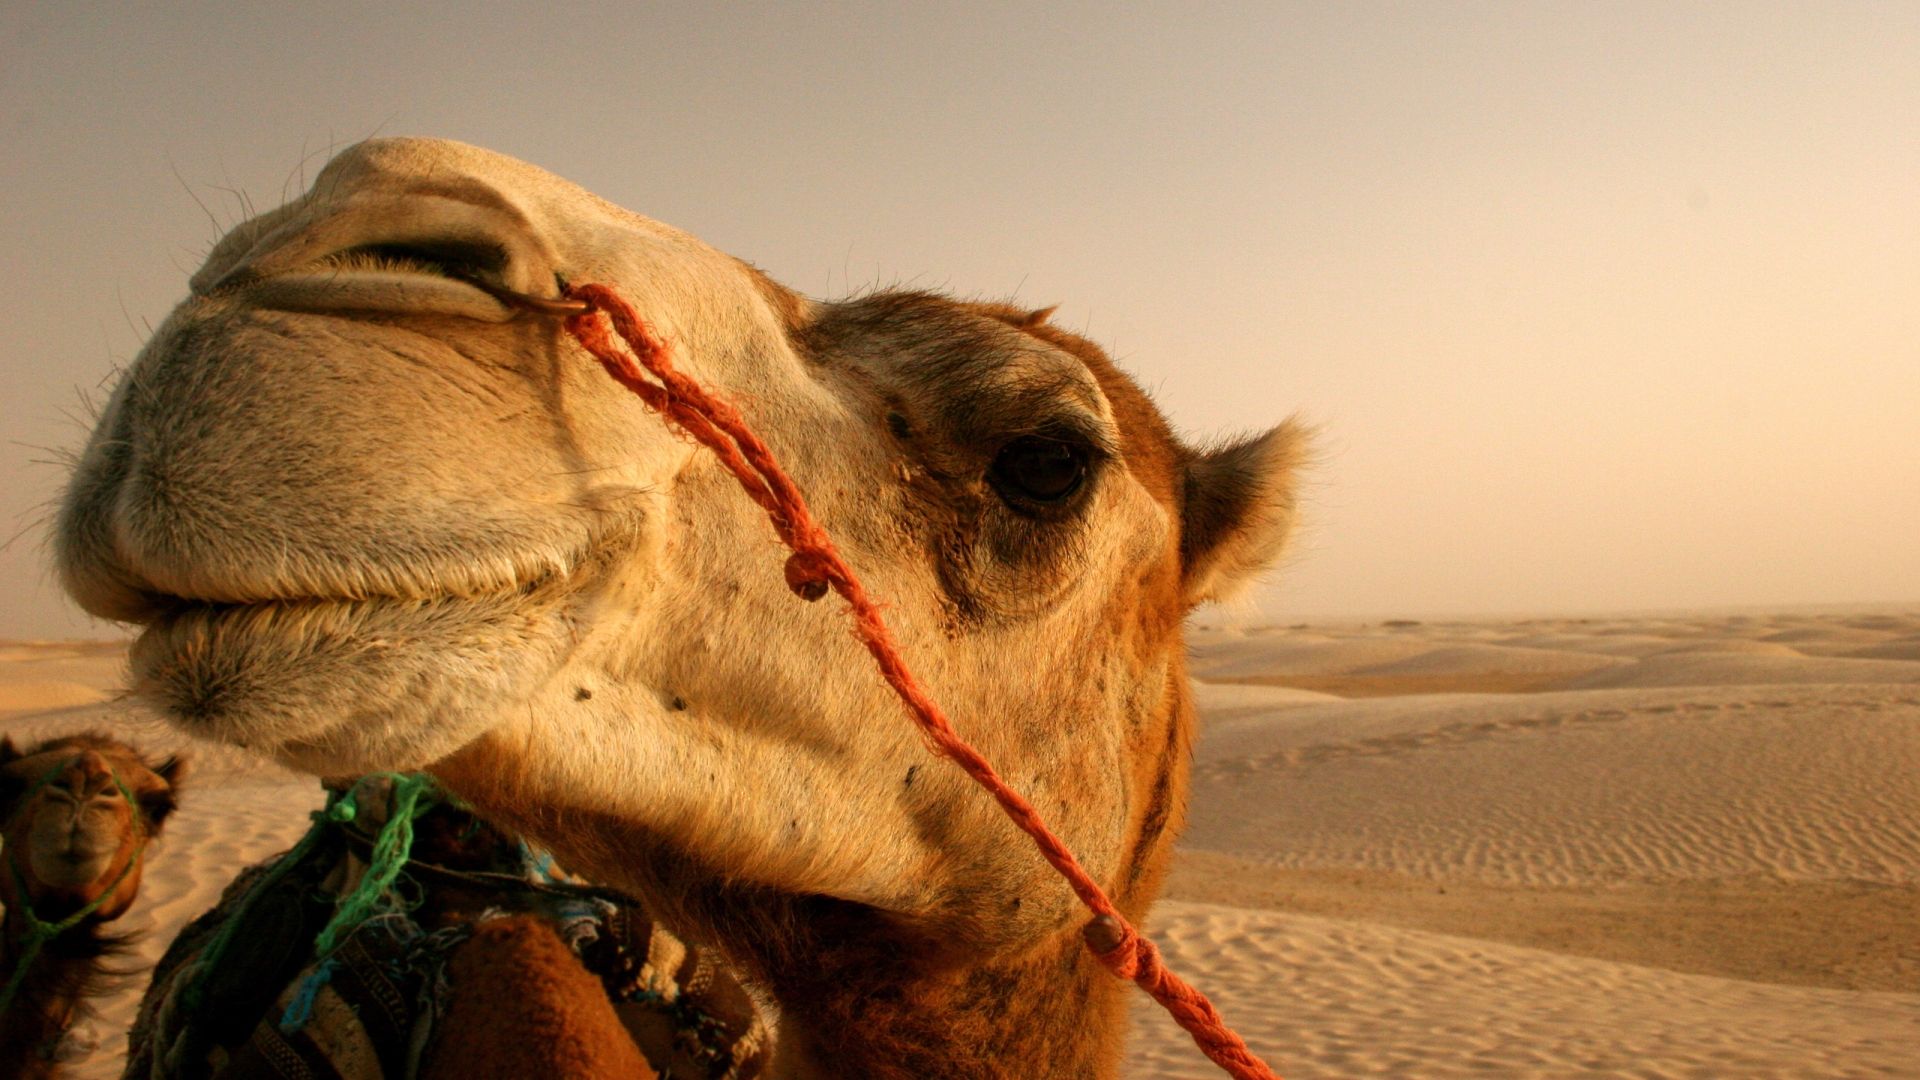 Camel In The Desert Photo